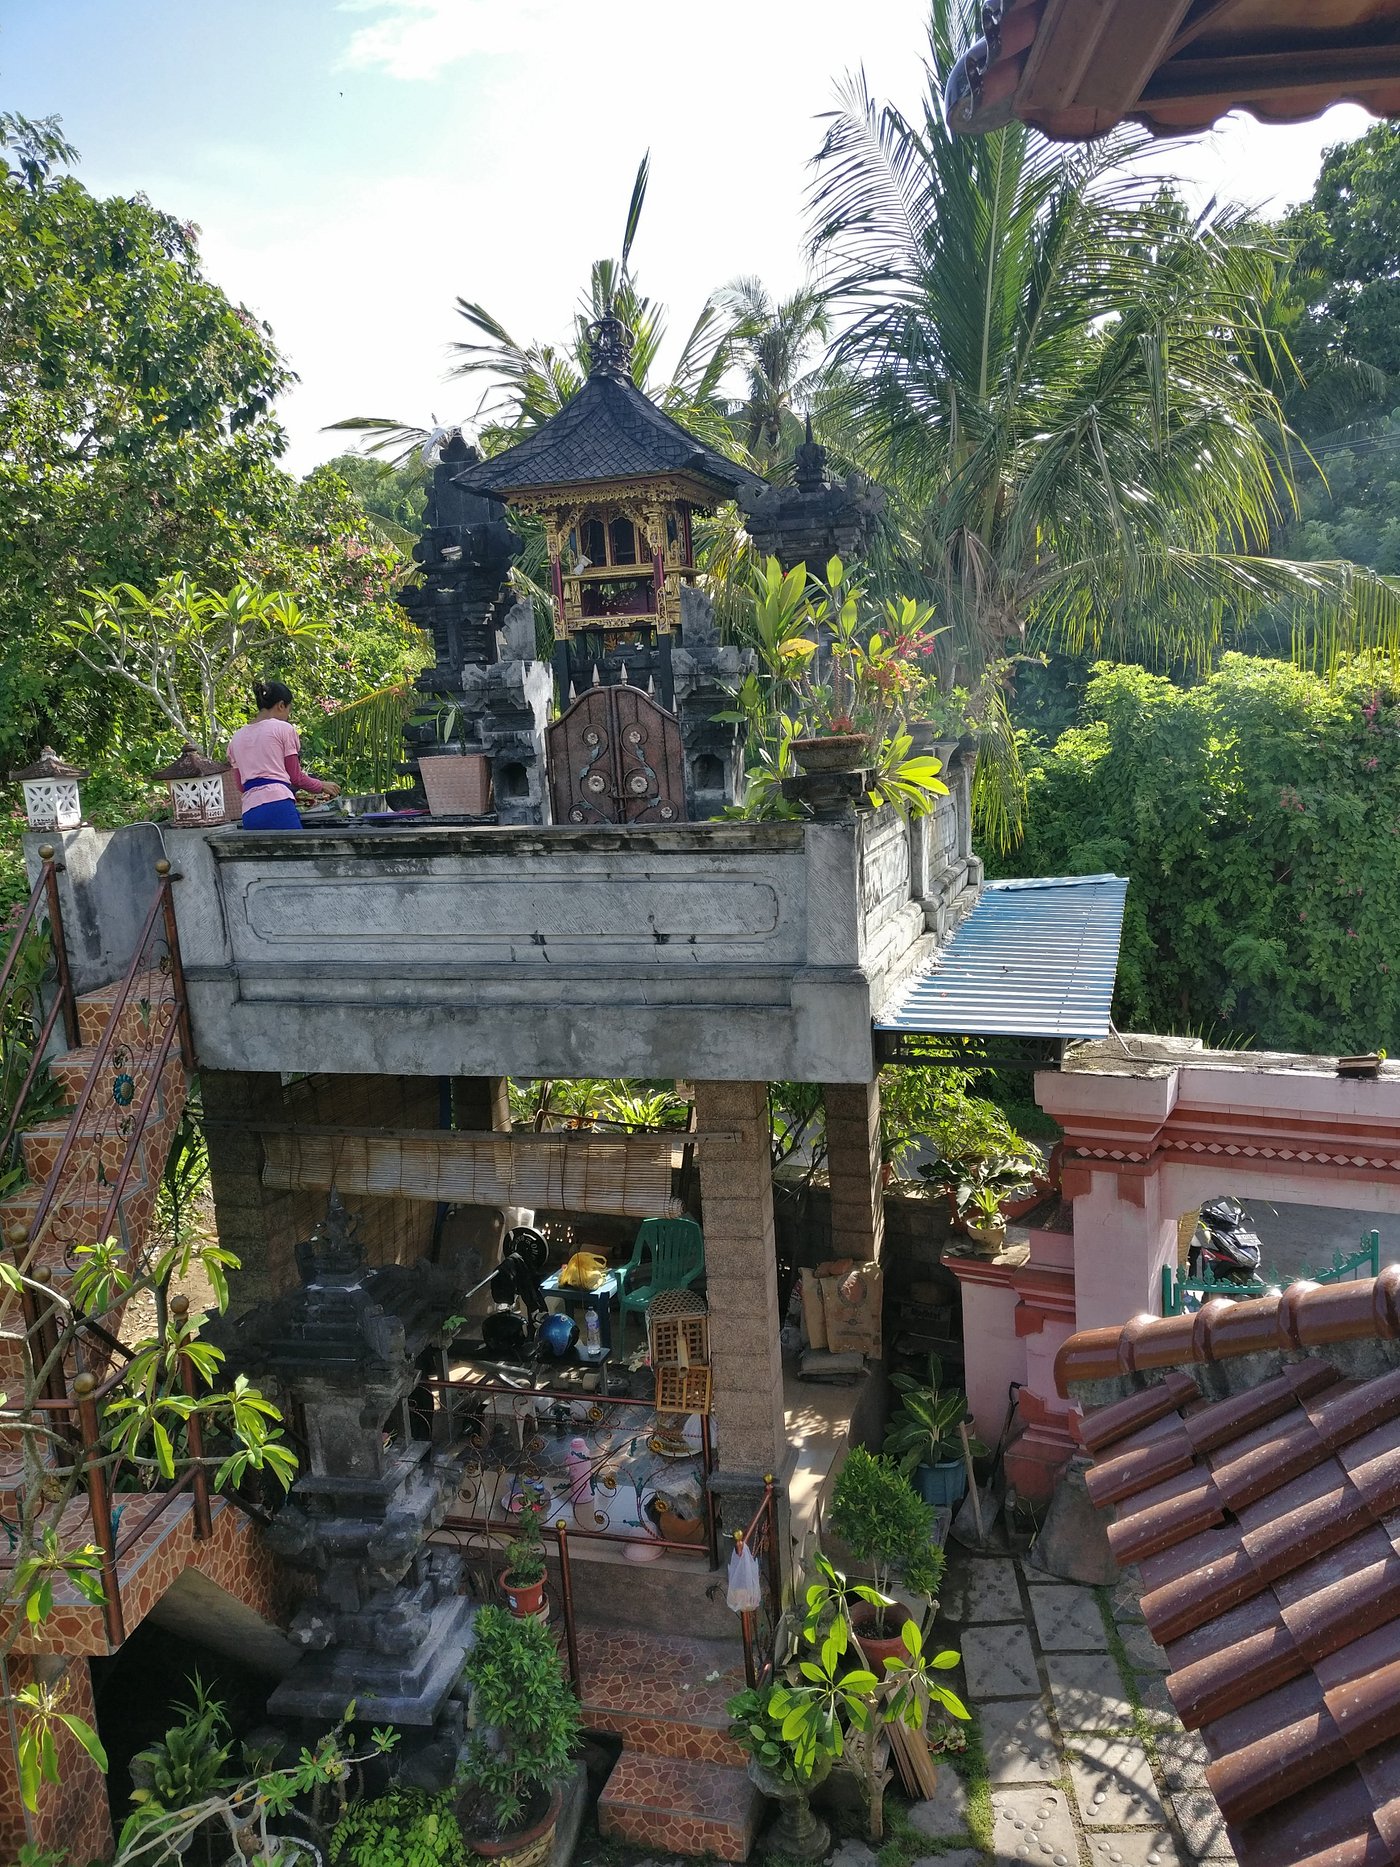 HARMONY HOUSE $15 ($̶7̶5̶) - Prices & Lodge Reviews - Padangbai, Bali